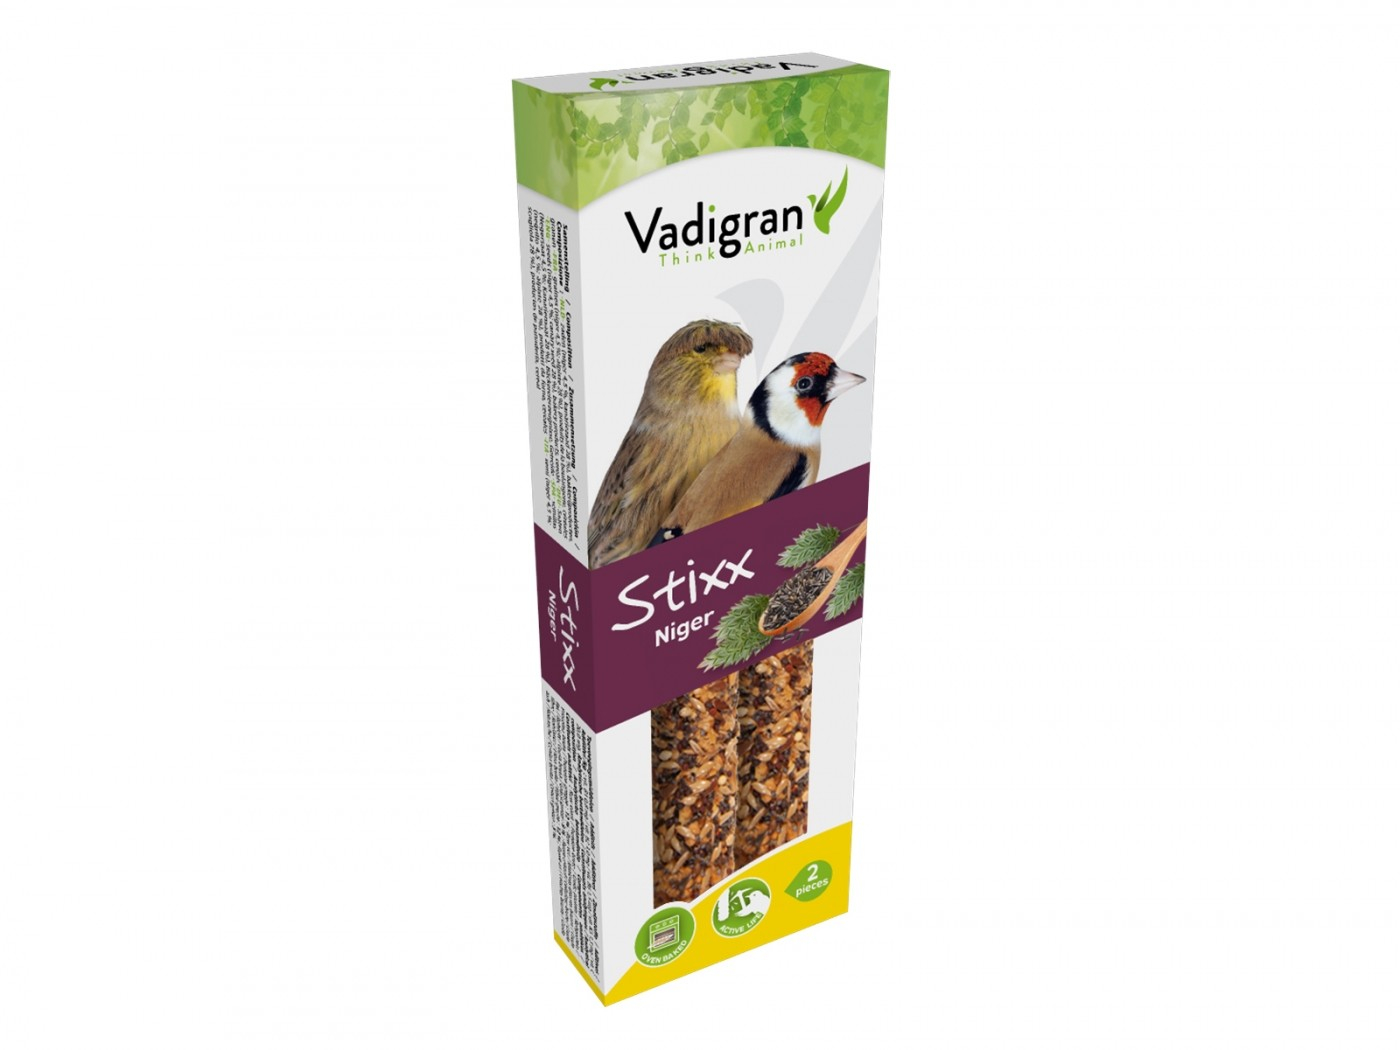 Vadigran Stixx Barritas de semillas de niger para pájaros europeos y canarios 85g